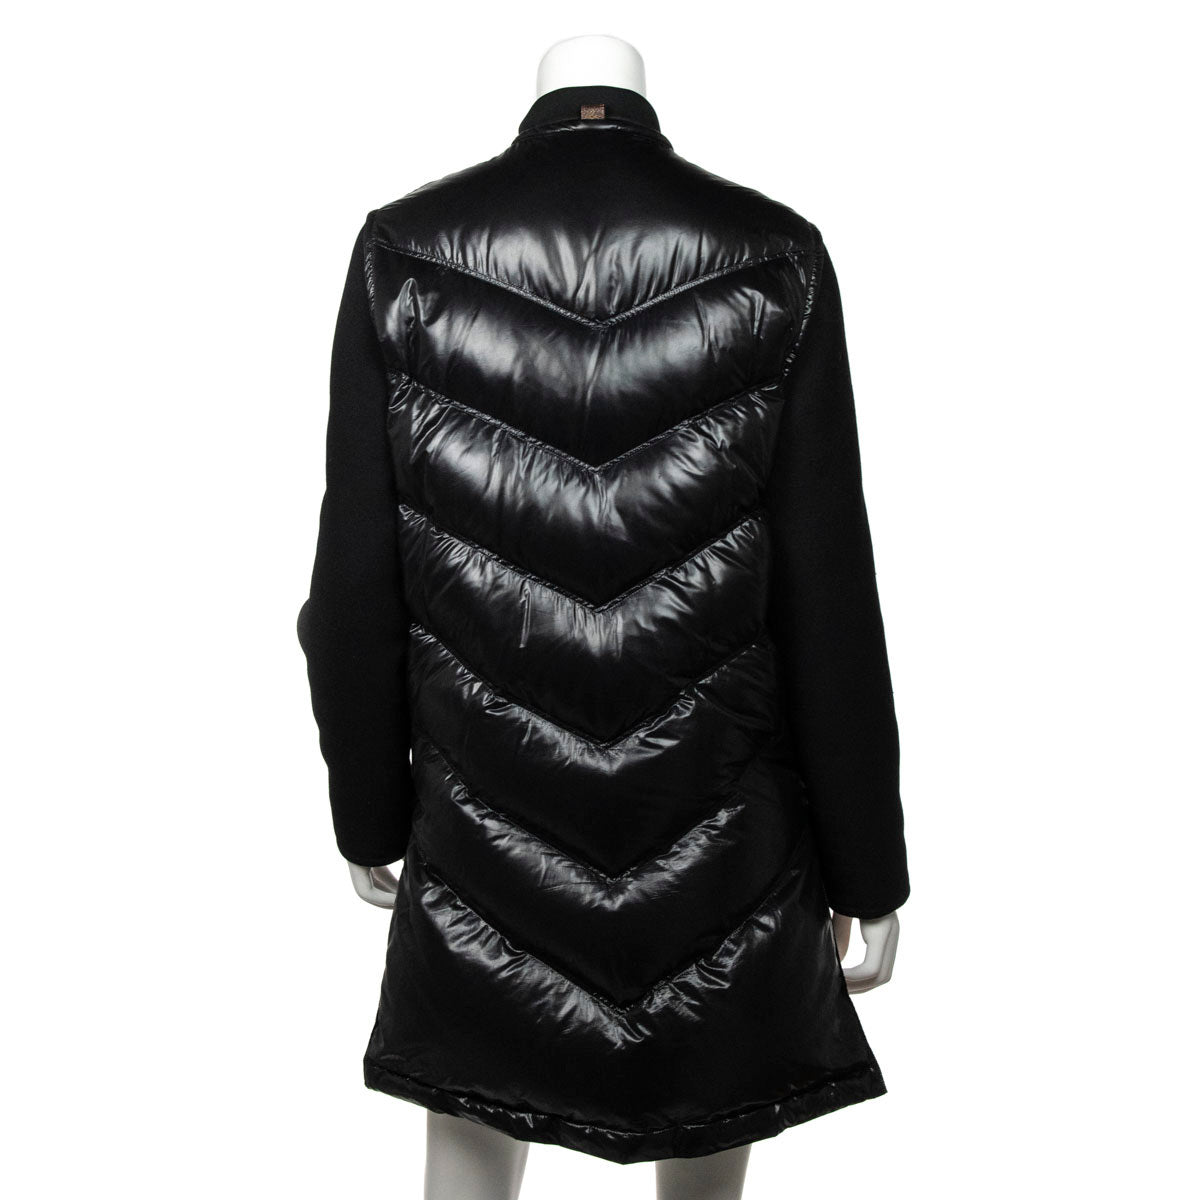 Wool jacket Louis Vuitton Black size 48 FR in Wool - 32608175